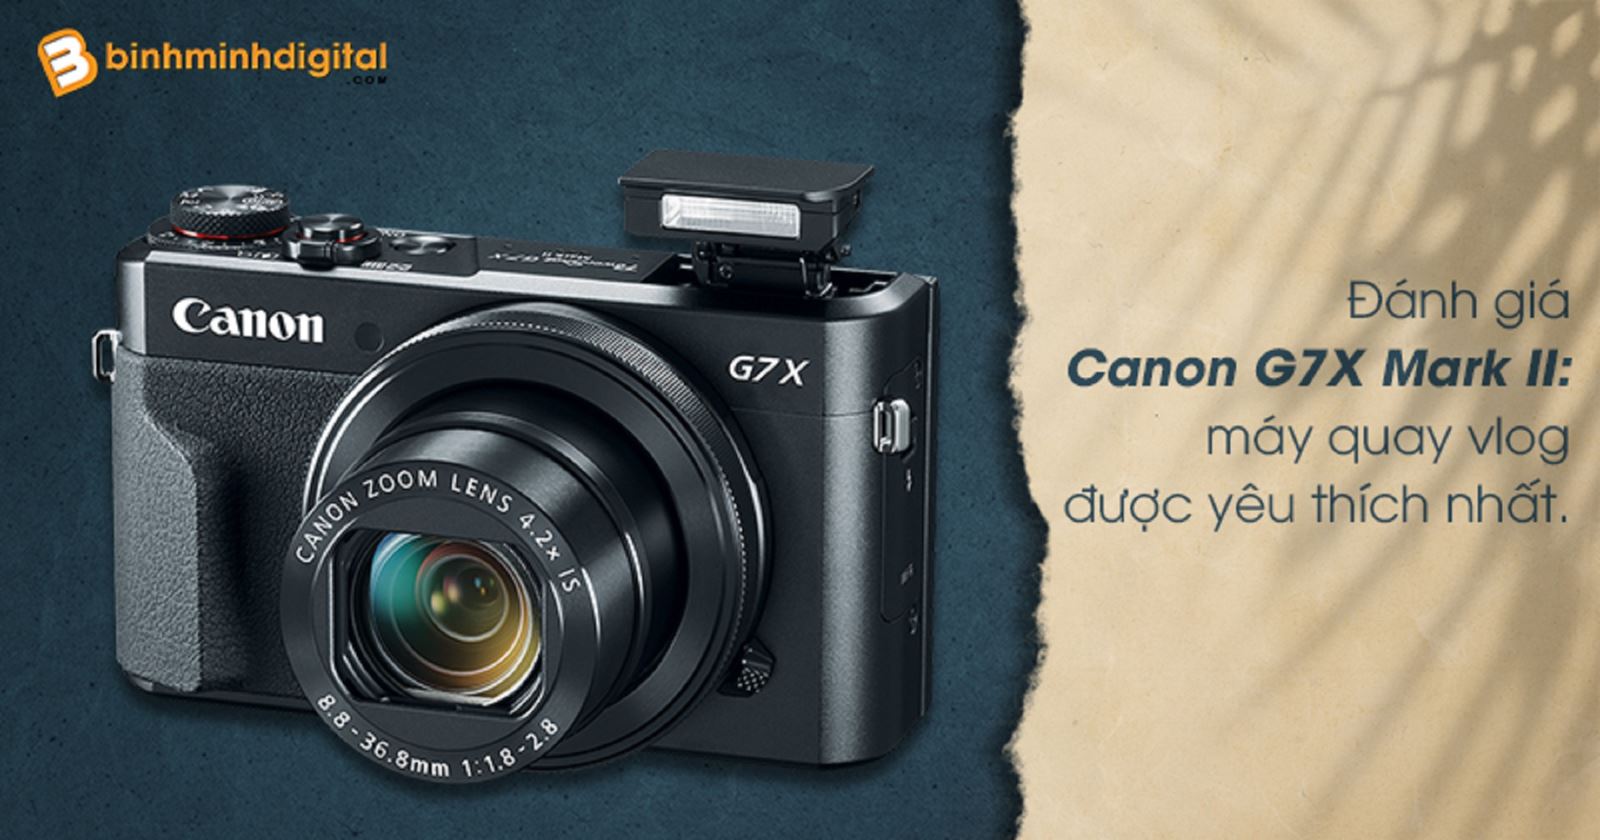 Đánh giá Canon G7X Mark II: máy quay vlog được yêu thích nhất